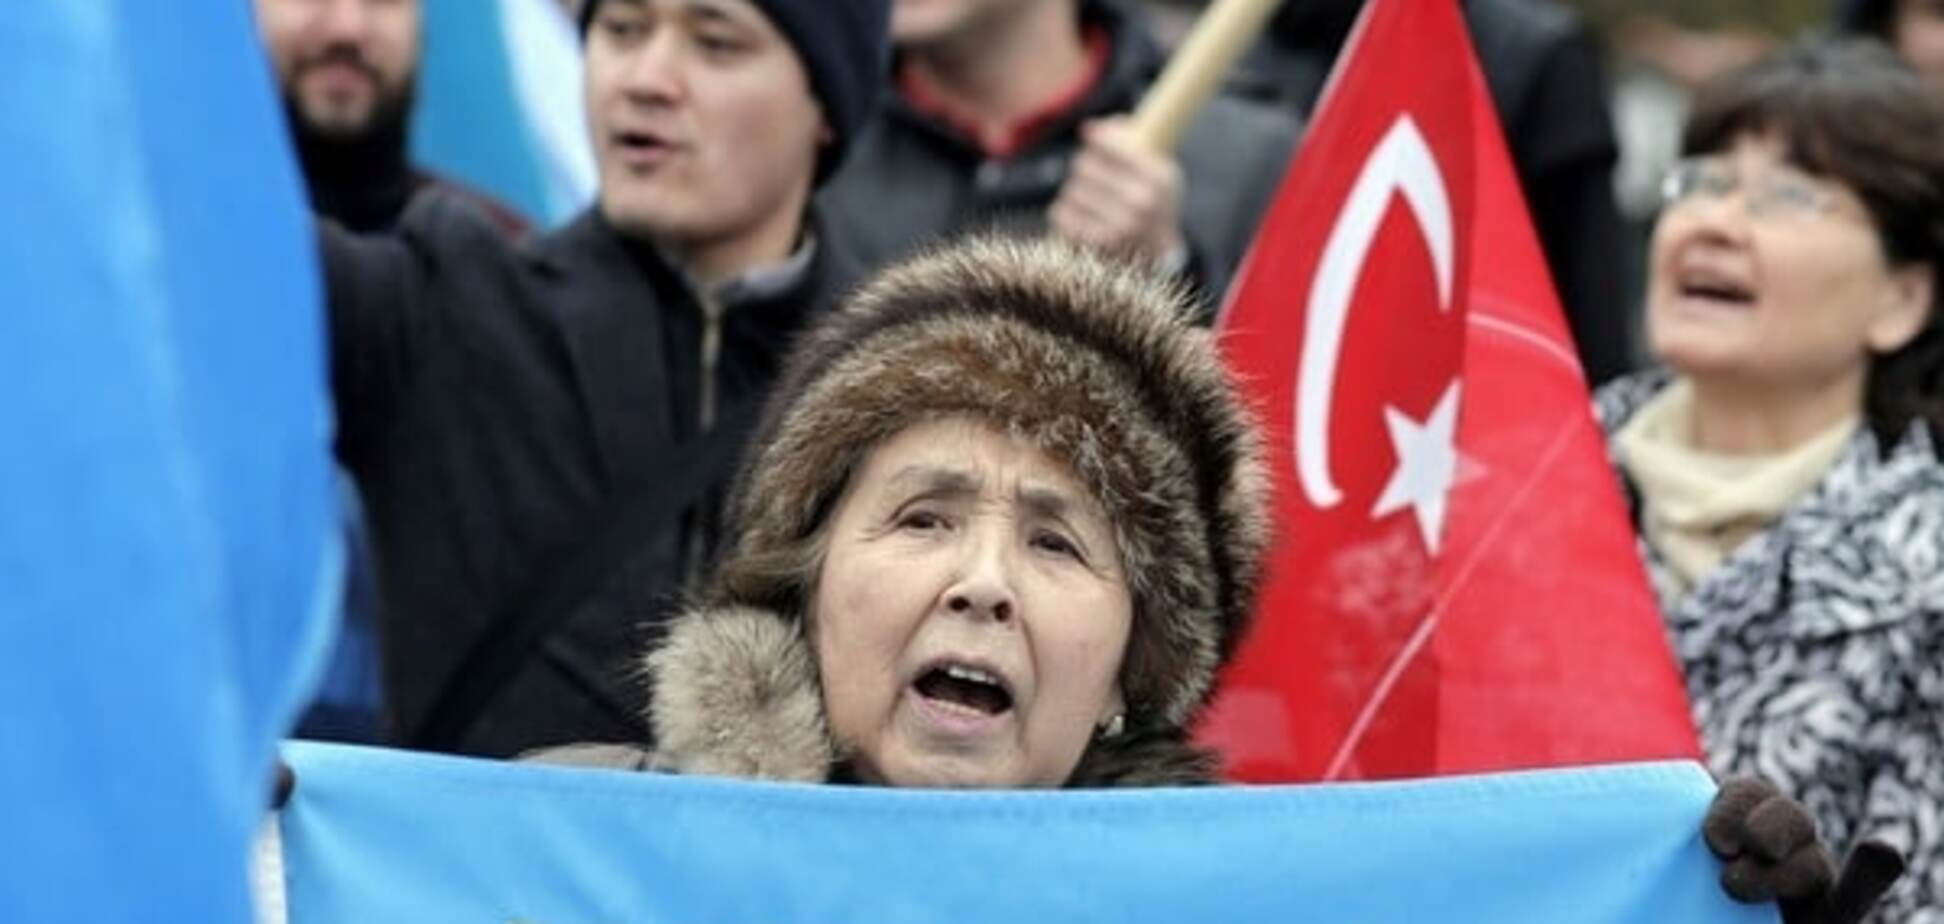 Кремль объявил крымских татар 'коллективным агентом' Украины и Турции – политолог из РФ